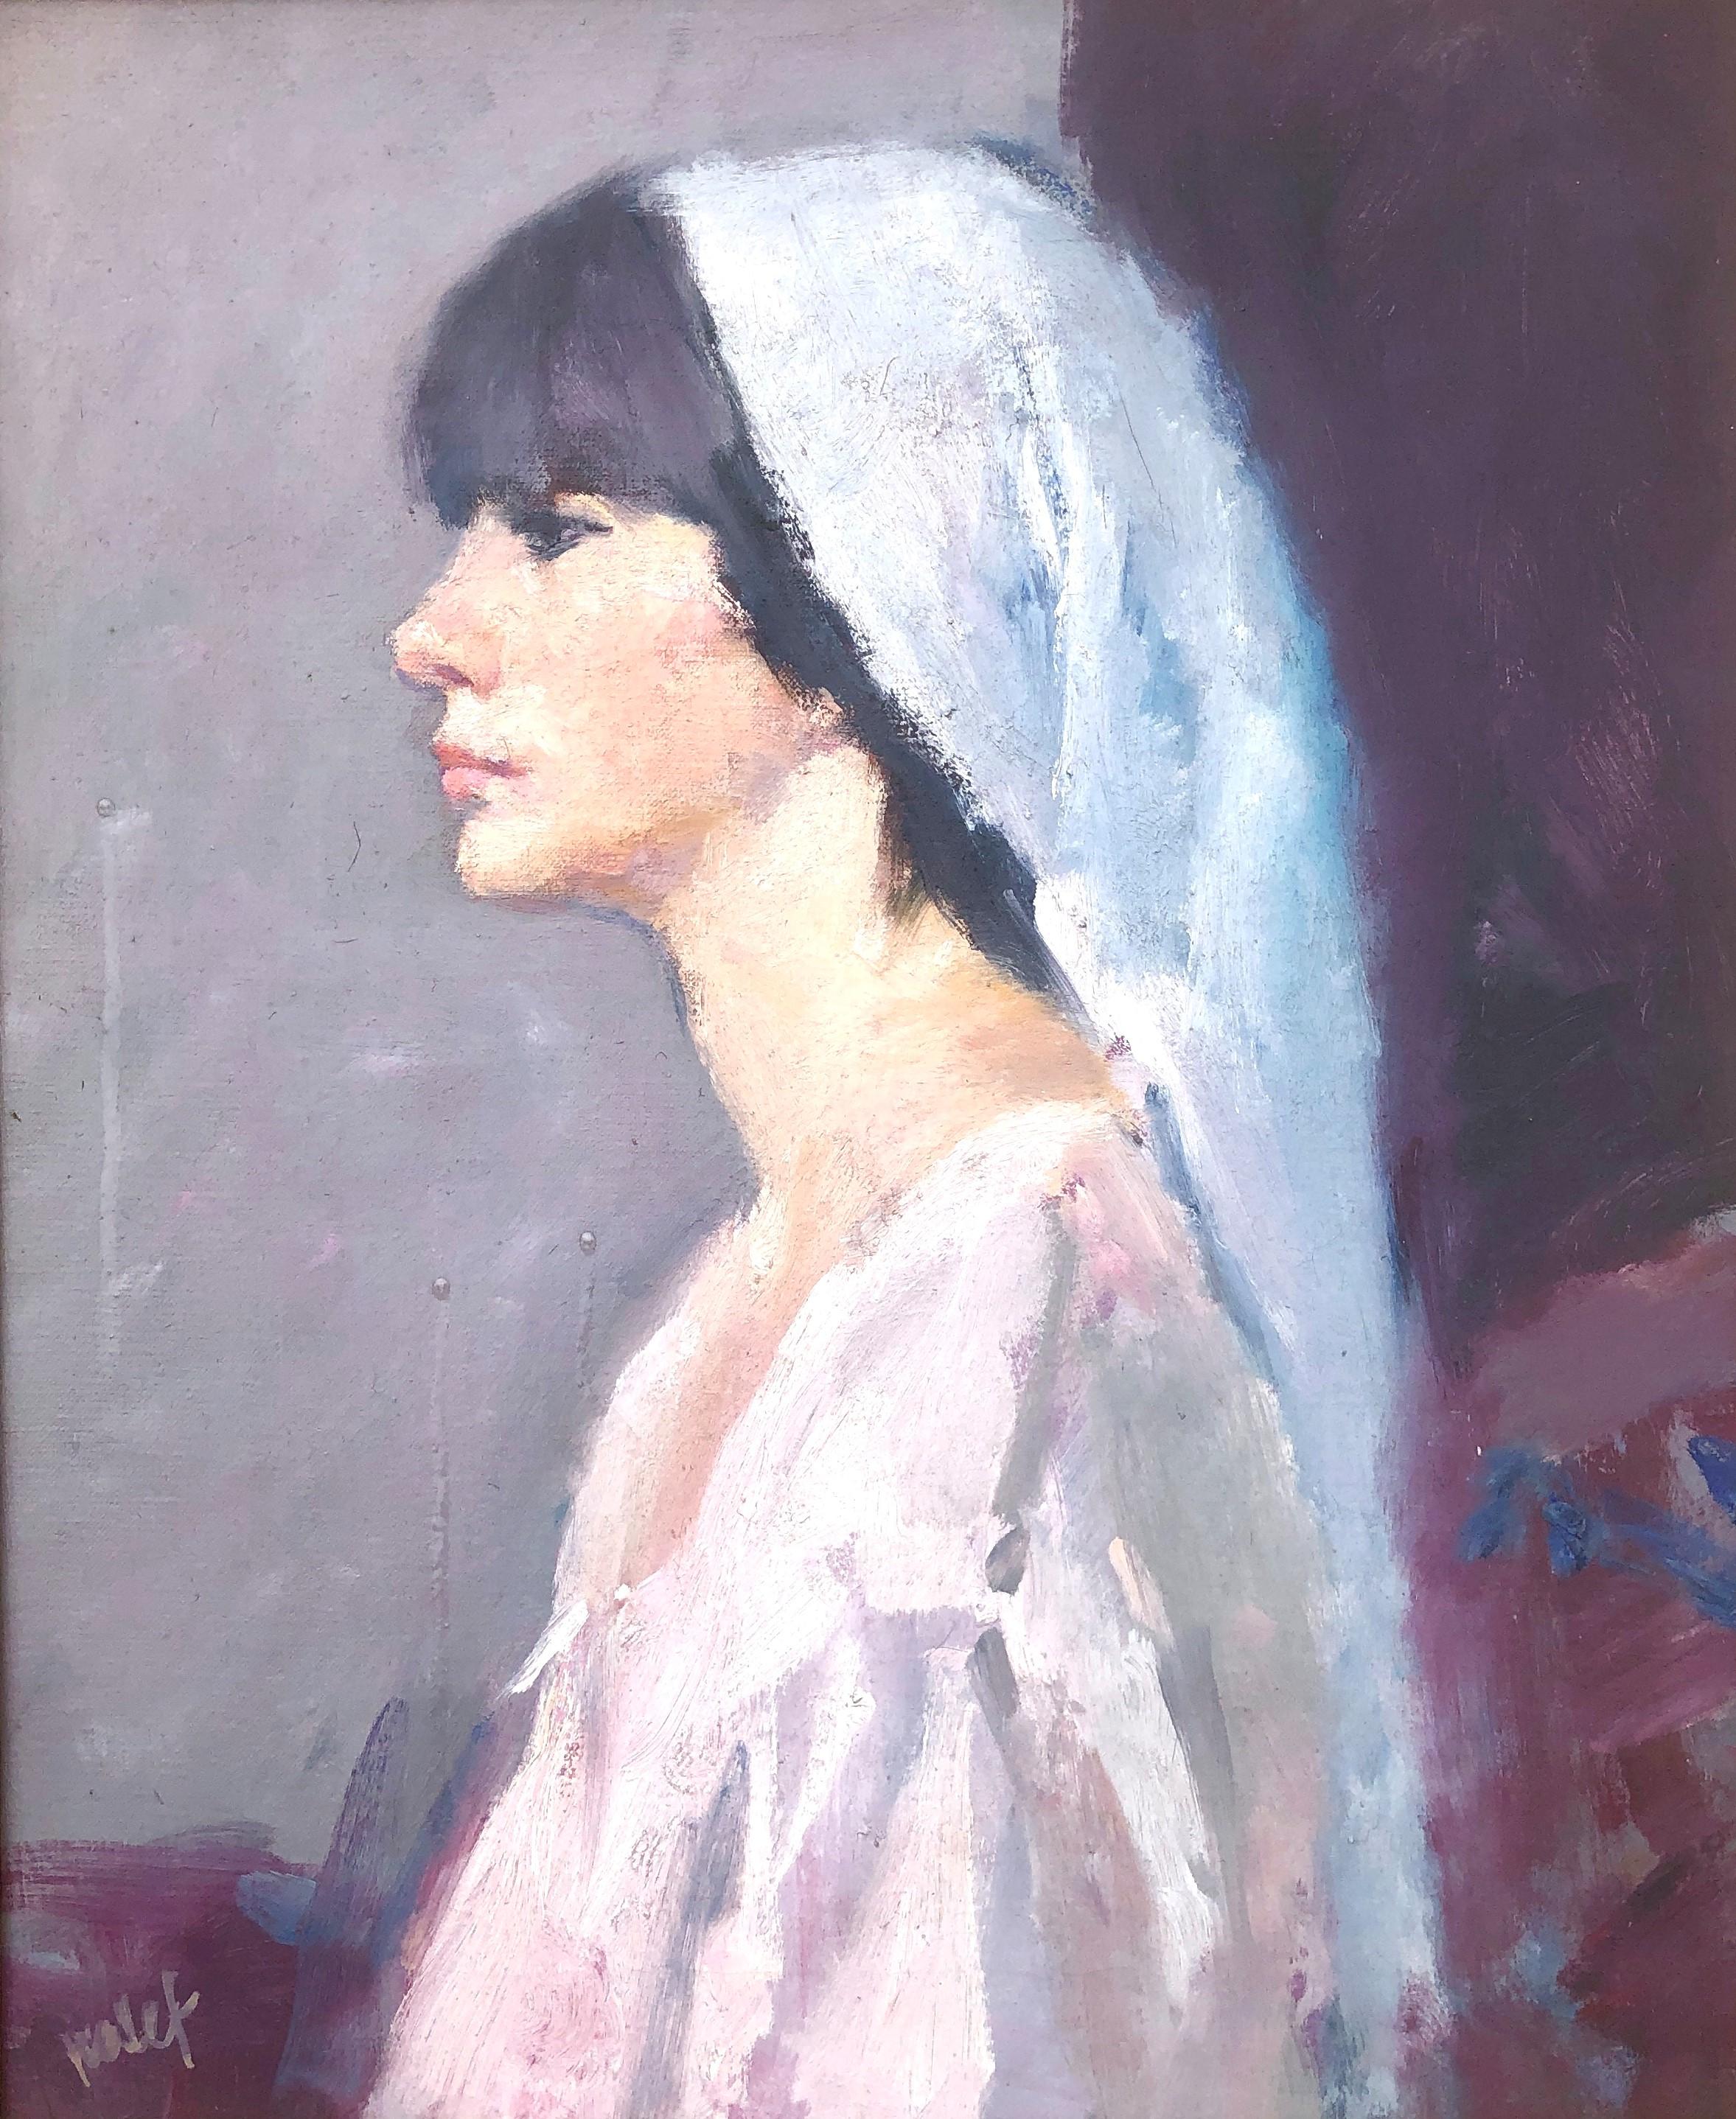 Female figure woman oil on canvas painting portrait